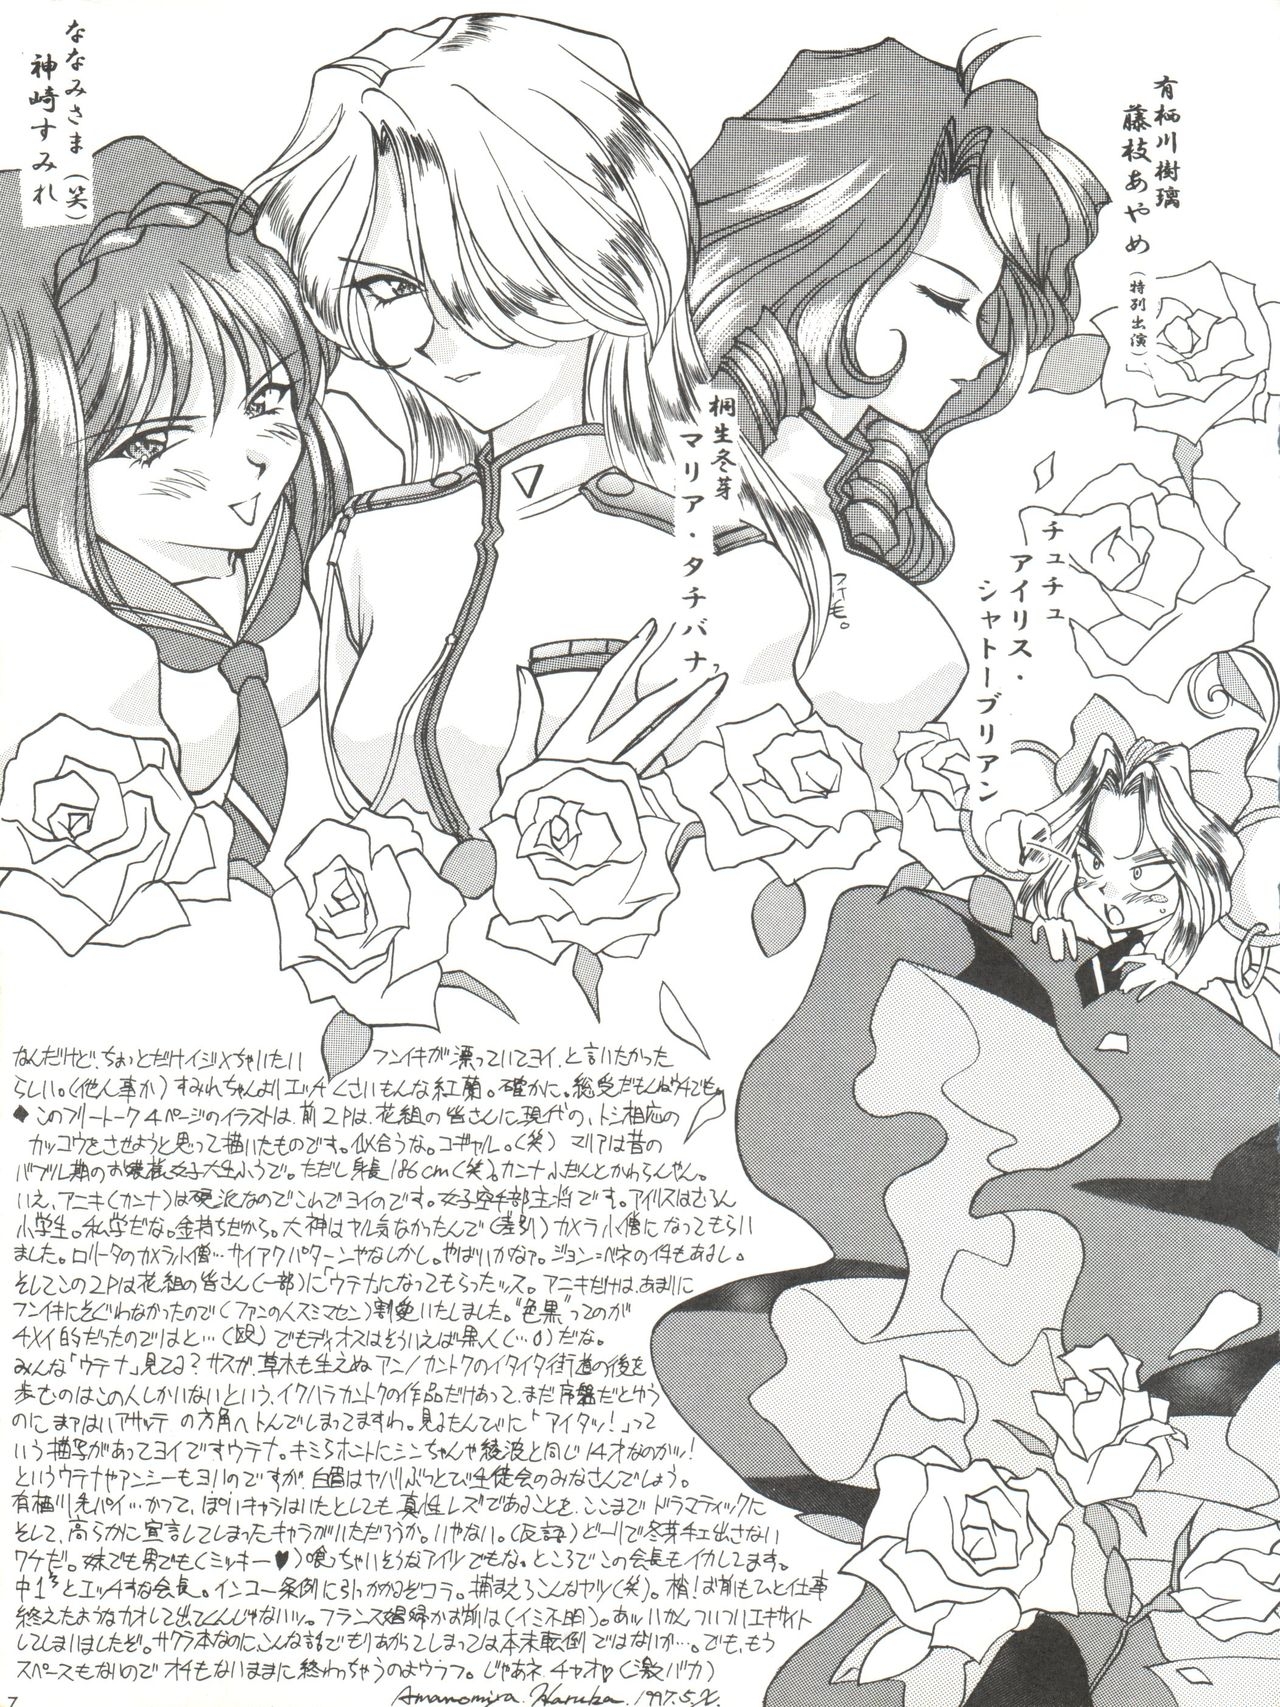 [LUCK&PLUCK!Co. (Amanomiya Haruka)] Li Kohran no Gottsuee Kanji (Sakura Wars) [1997-05-25] 7